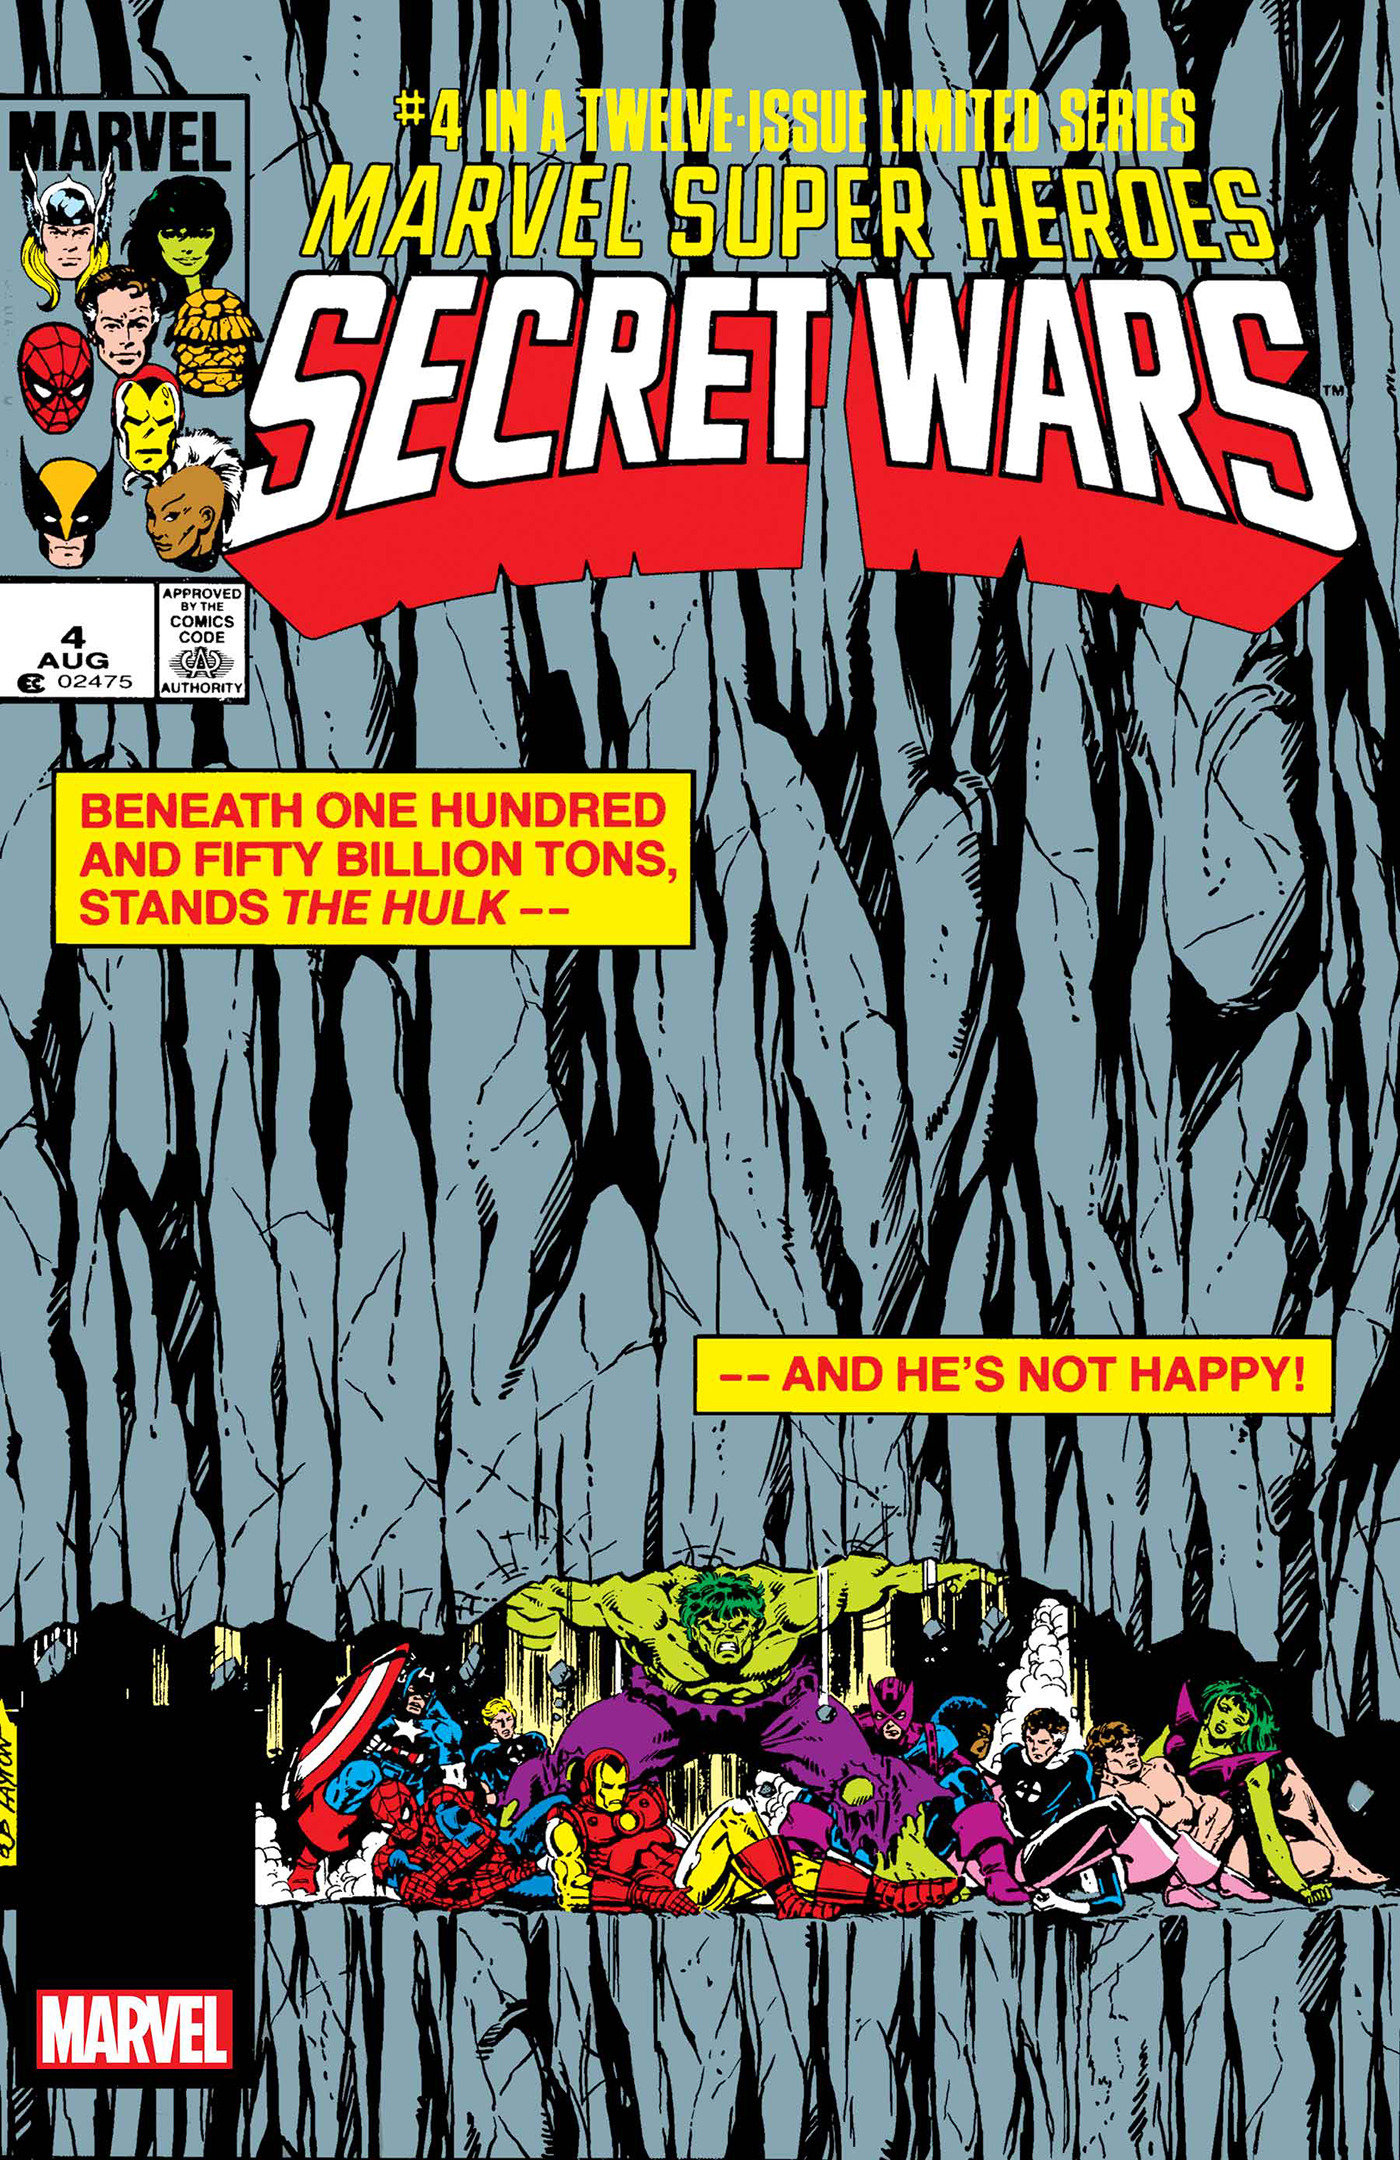 Marvel Super Heroes Secret Wars Facsimile #4 Foil Variant